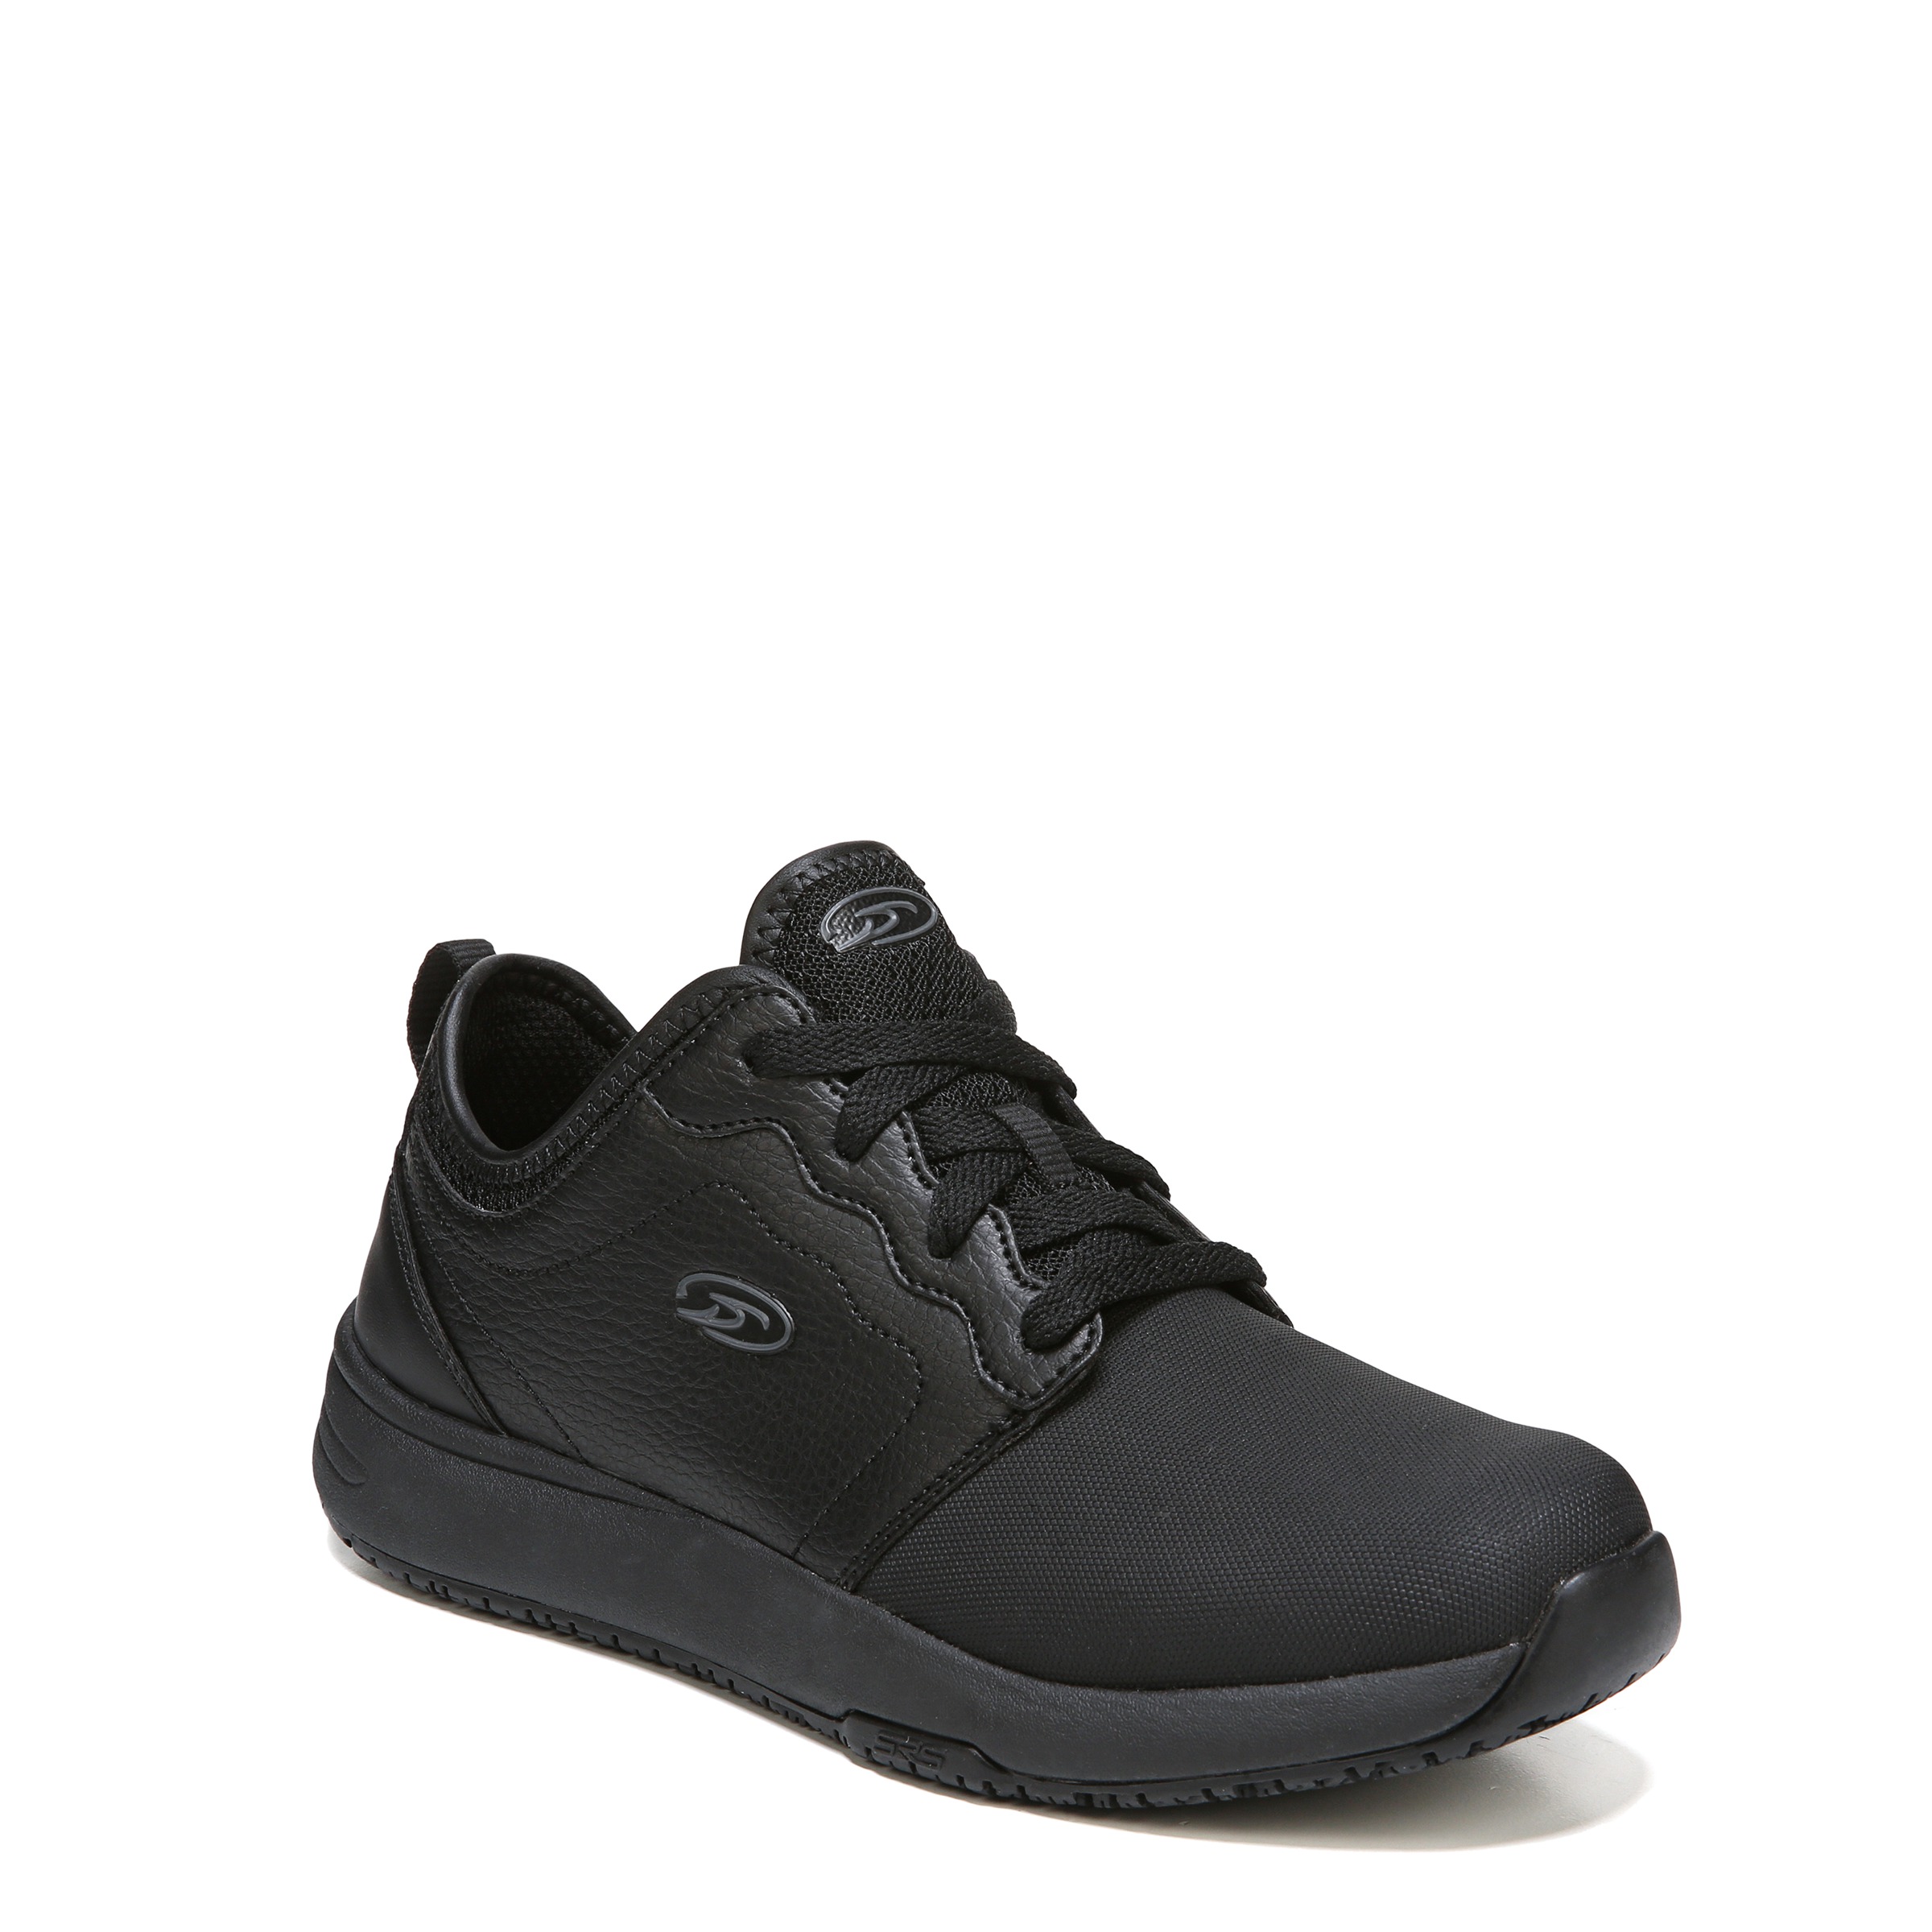 Dr. Scholl's Drive Women's Slip Resistant Black Athletic Work Shoe, E2504M1